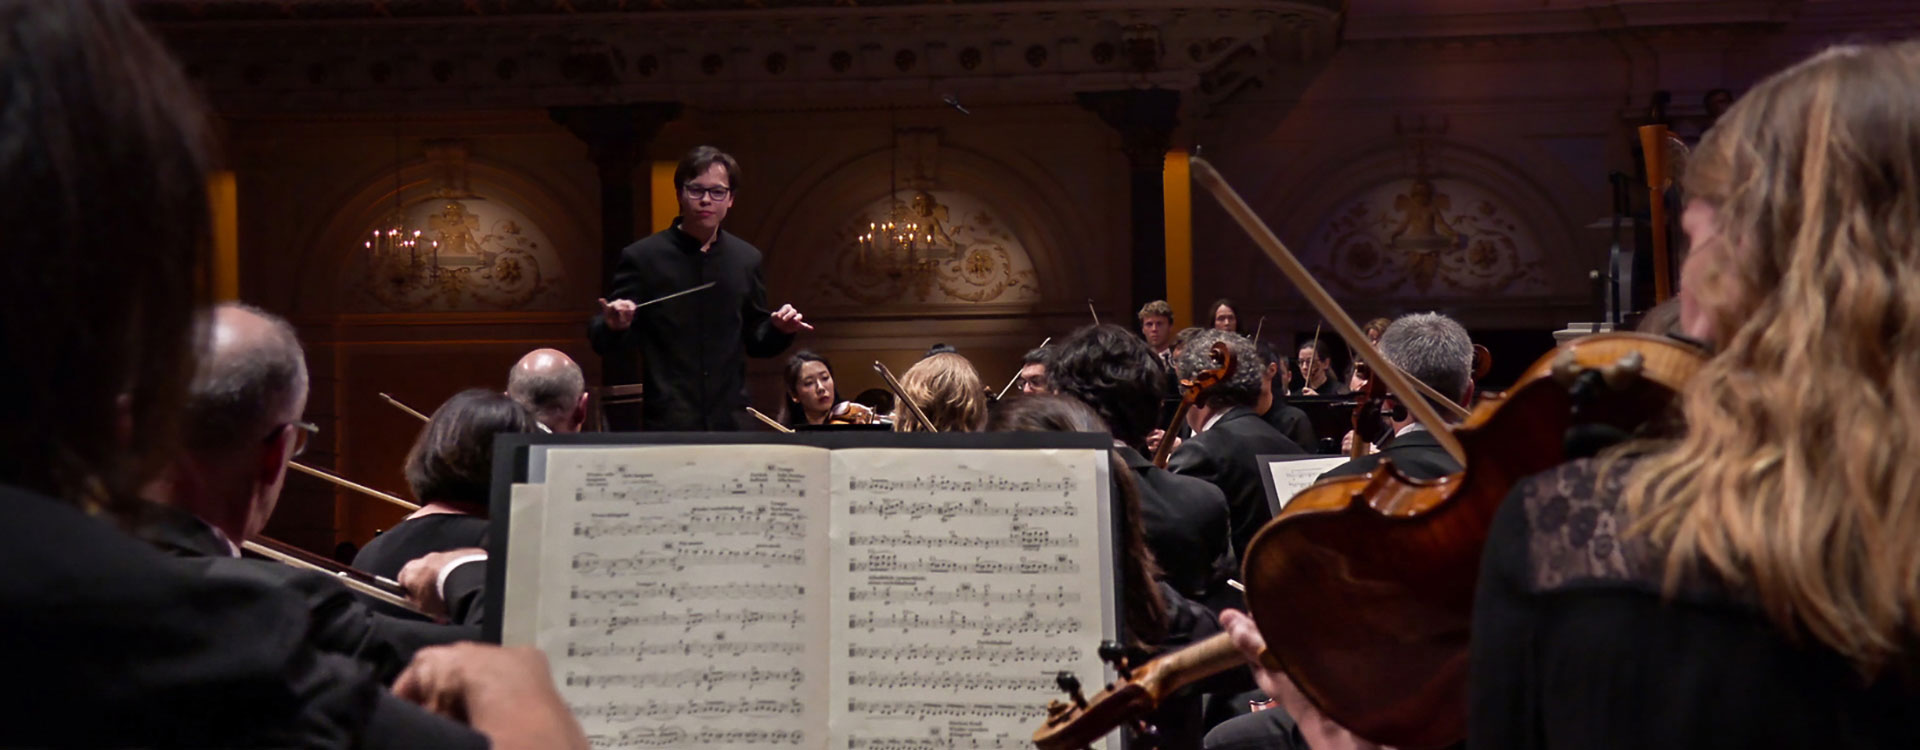 Tarmo Peltokoski Conducts Mahler's Titan